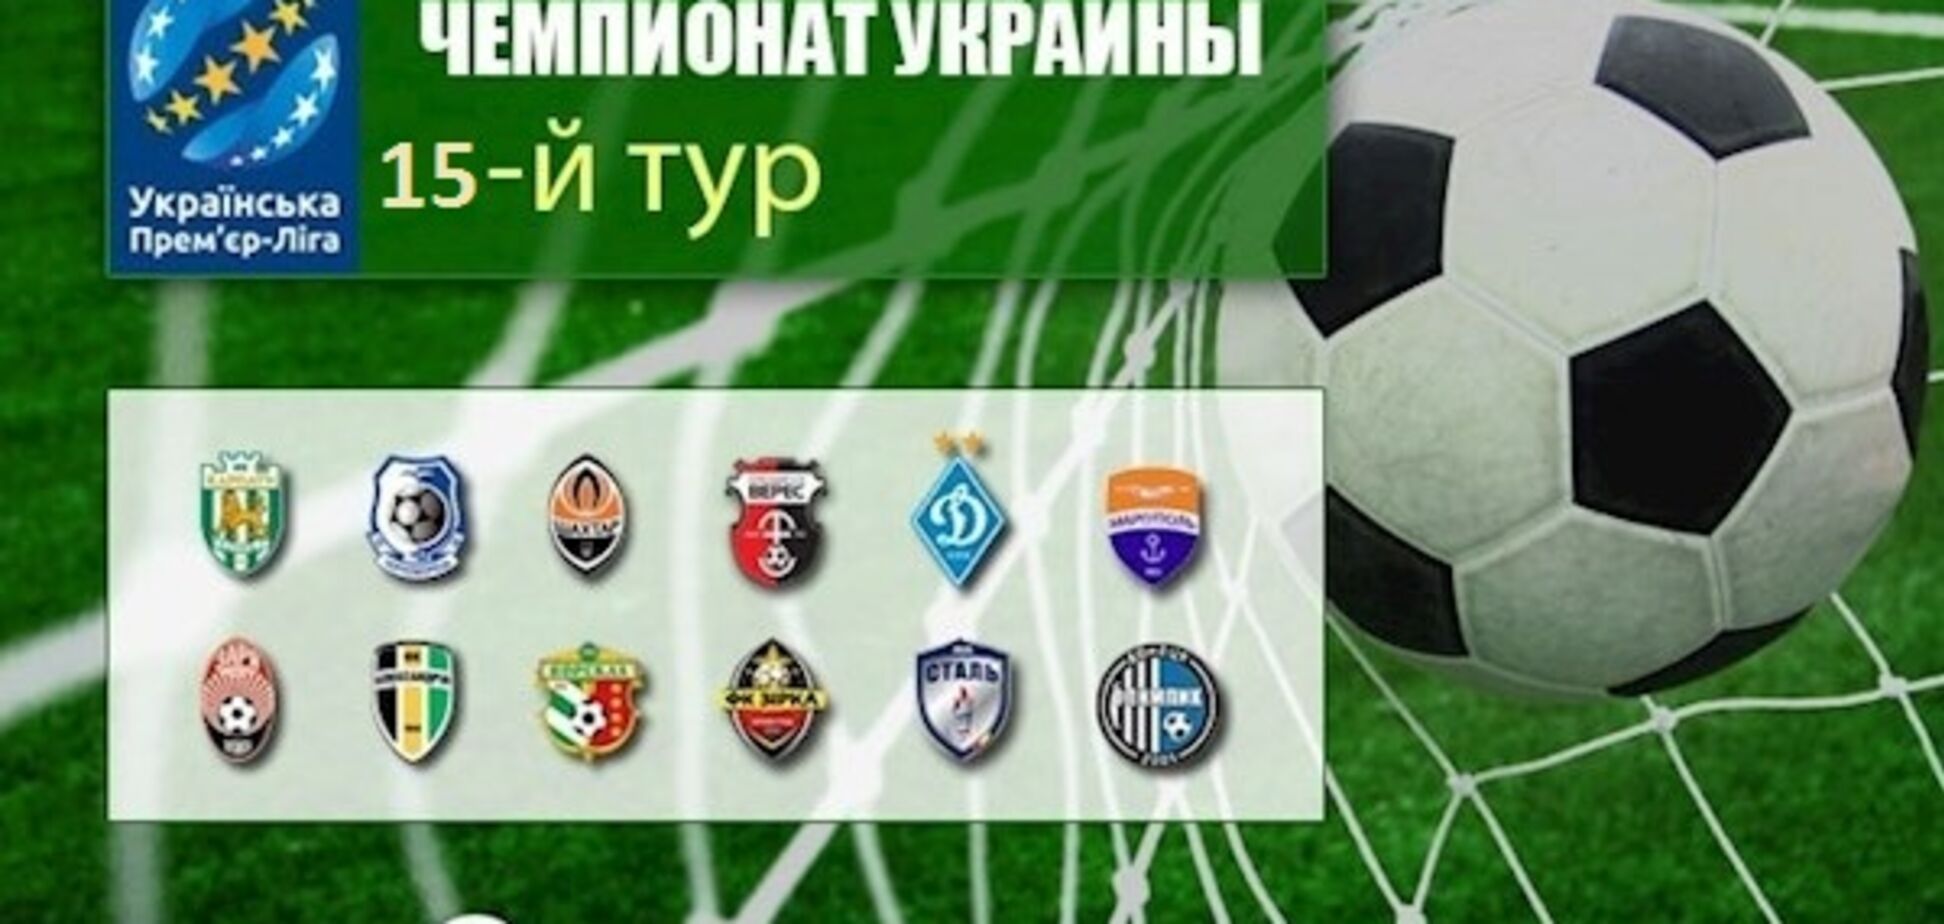 15-й тур чемпіонату України з футболу: результати і таблиця